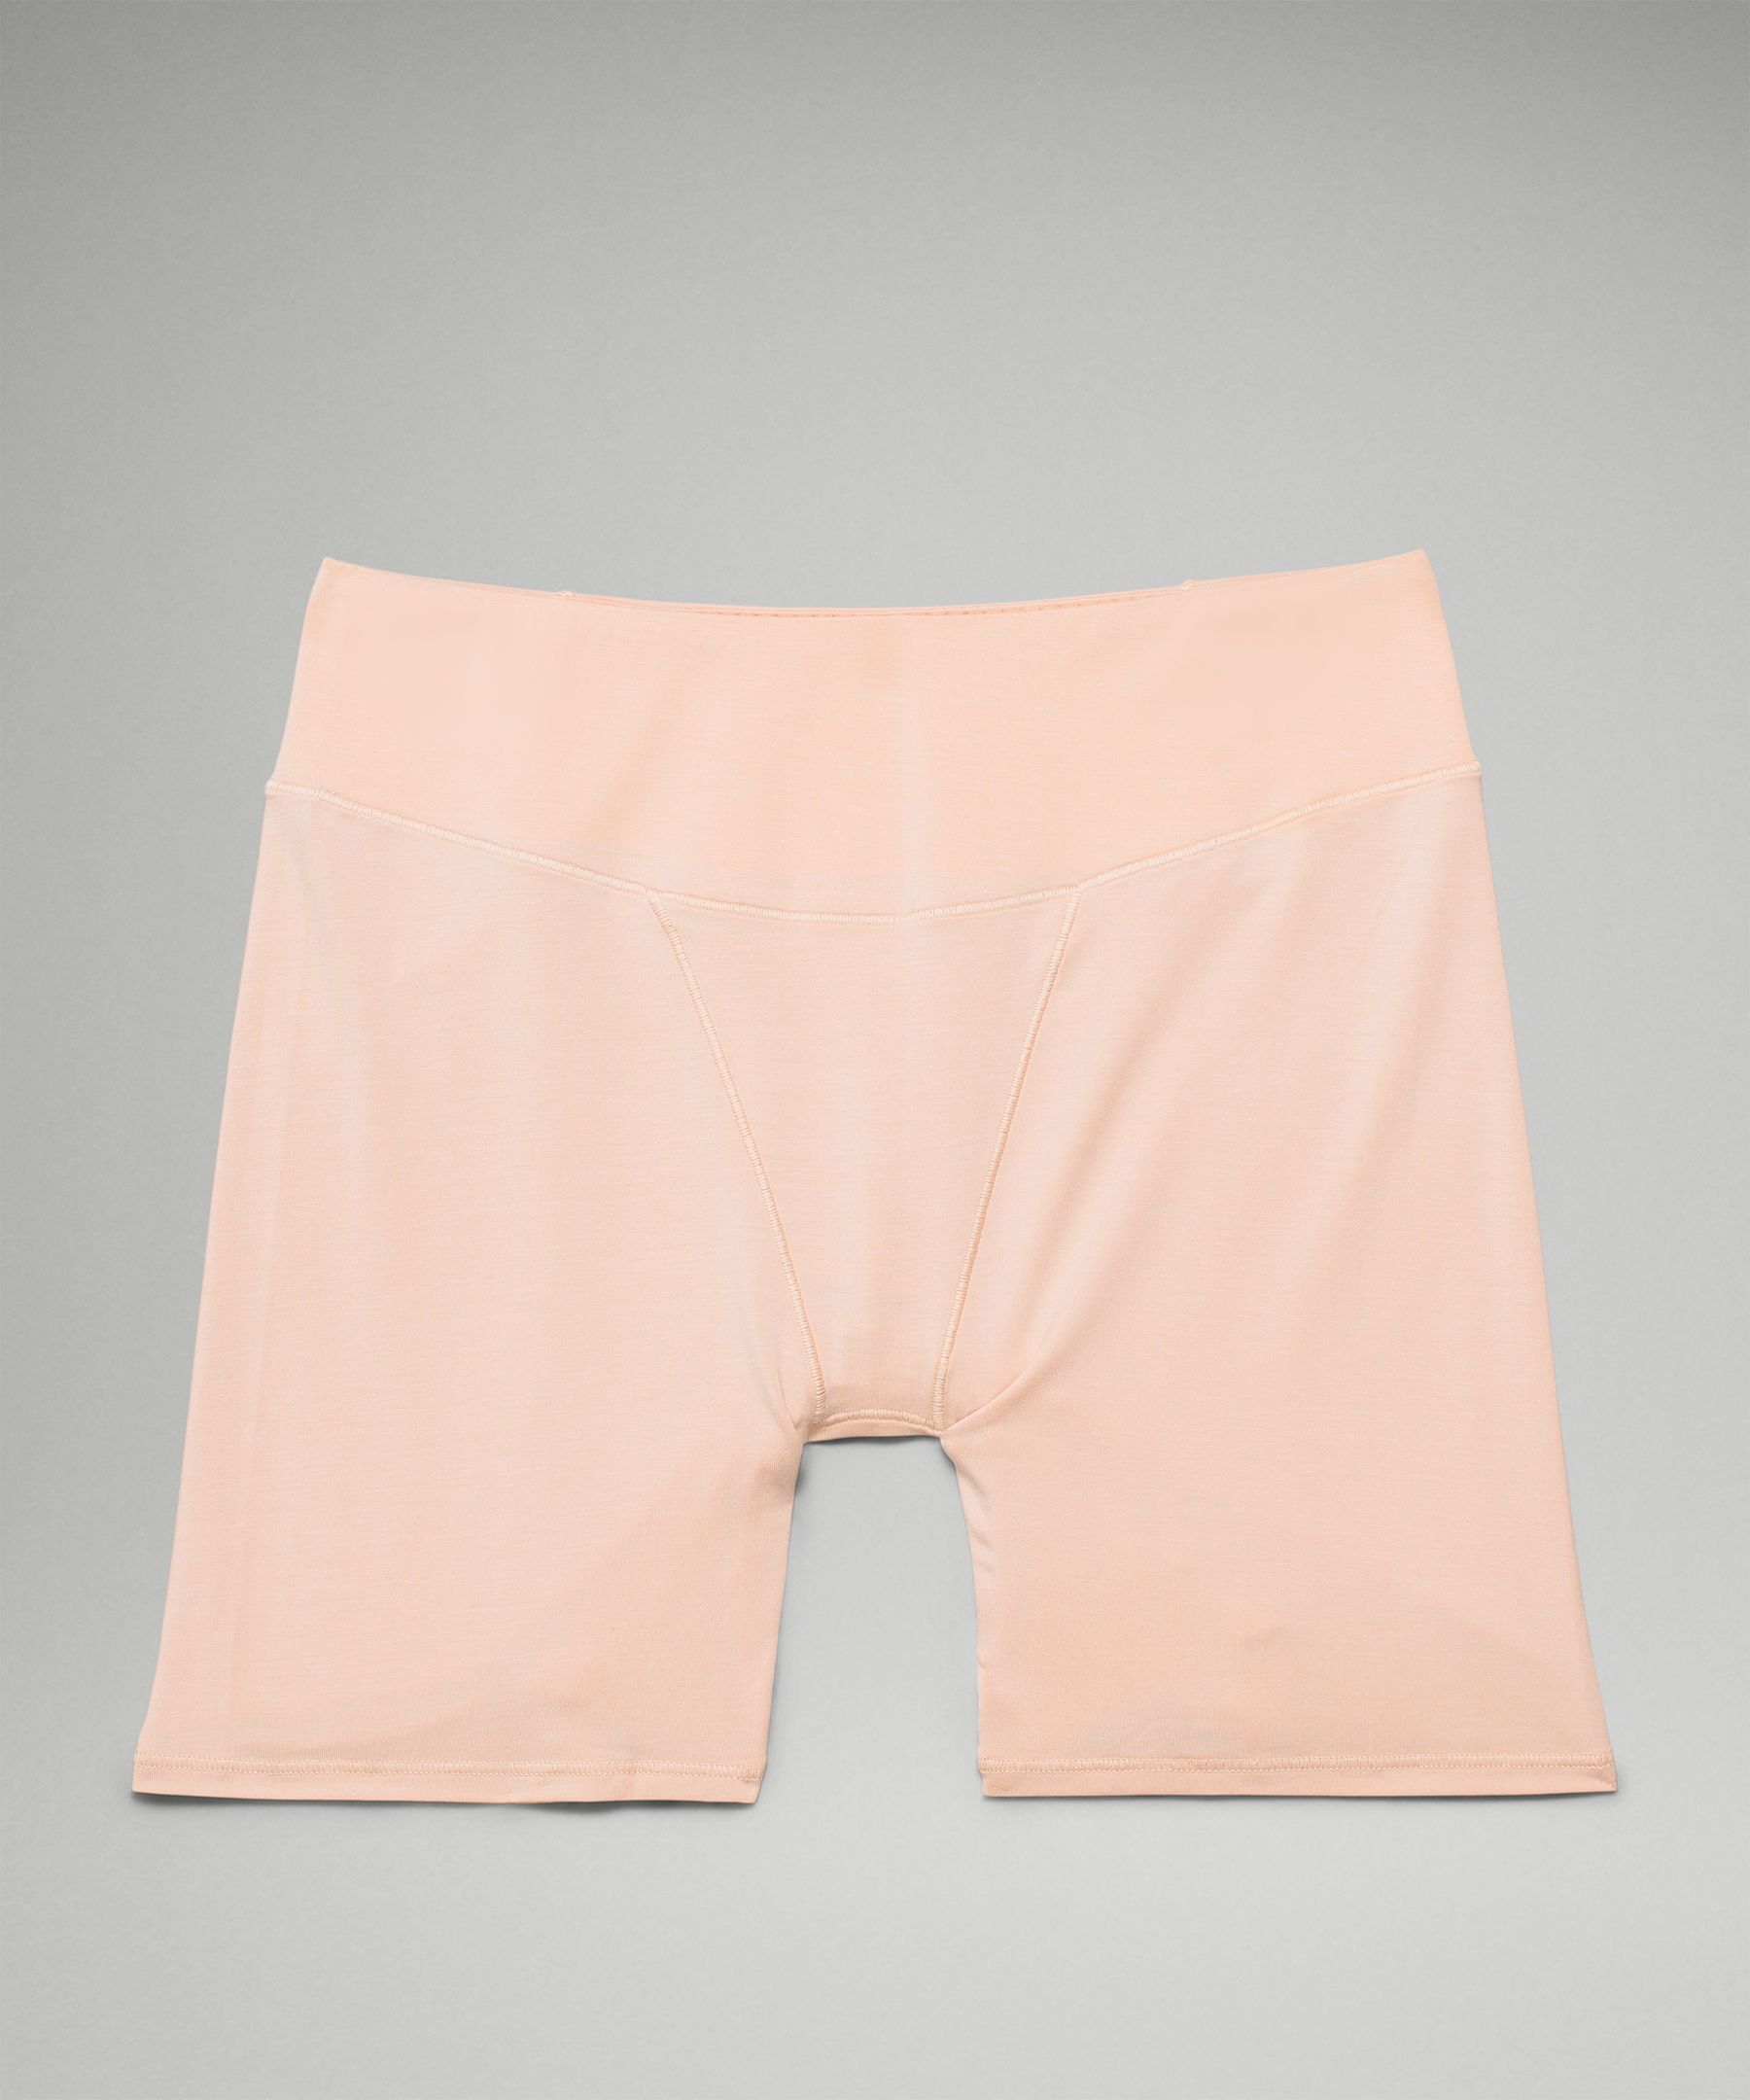 Lululemon UnderEase Super-High-Rise Shortie Underwear 5". 4